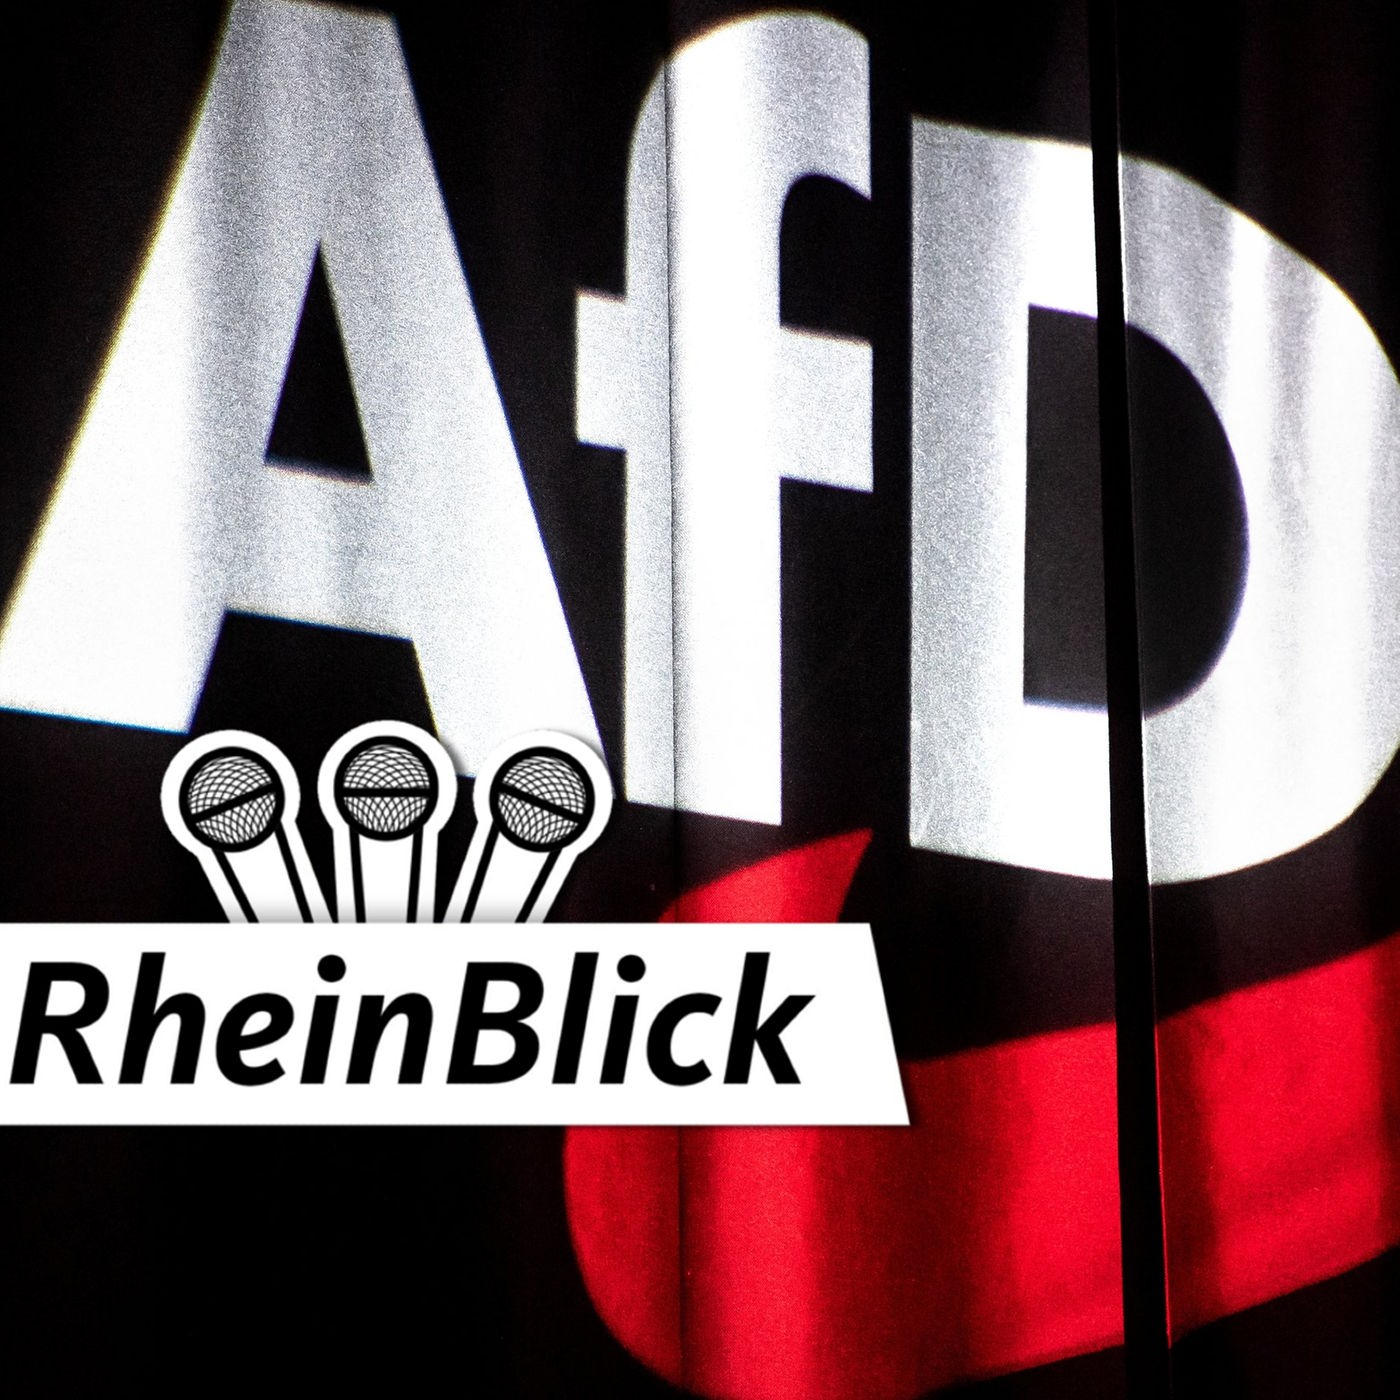 Landtagsdebatte über Rechtsextremismus: Dank an Demonstranten, Rüge für die  AfD - Landespolitik - Nachrichten - WDR